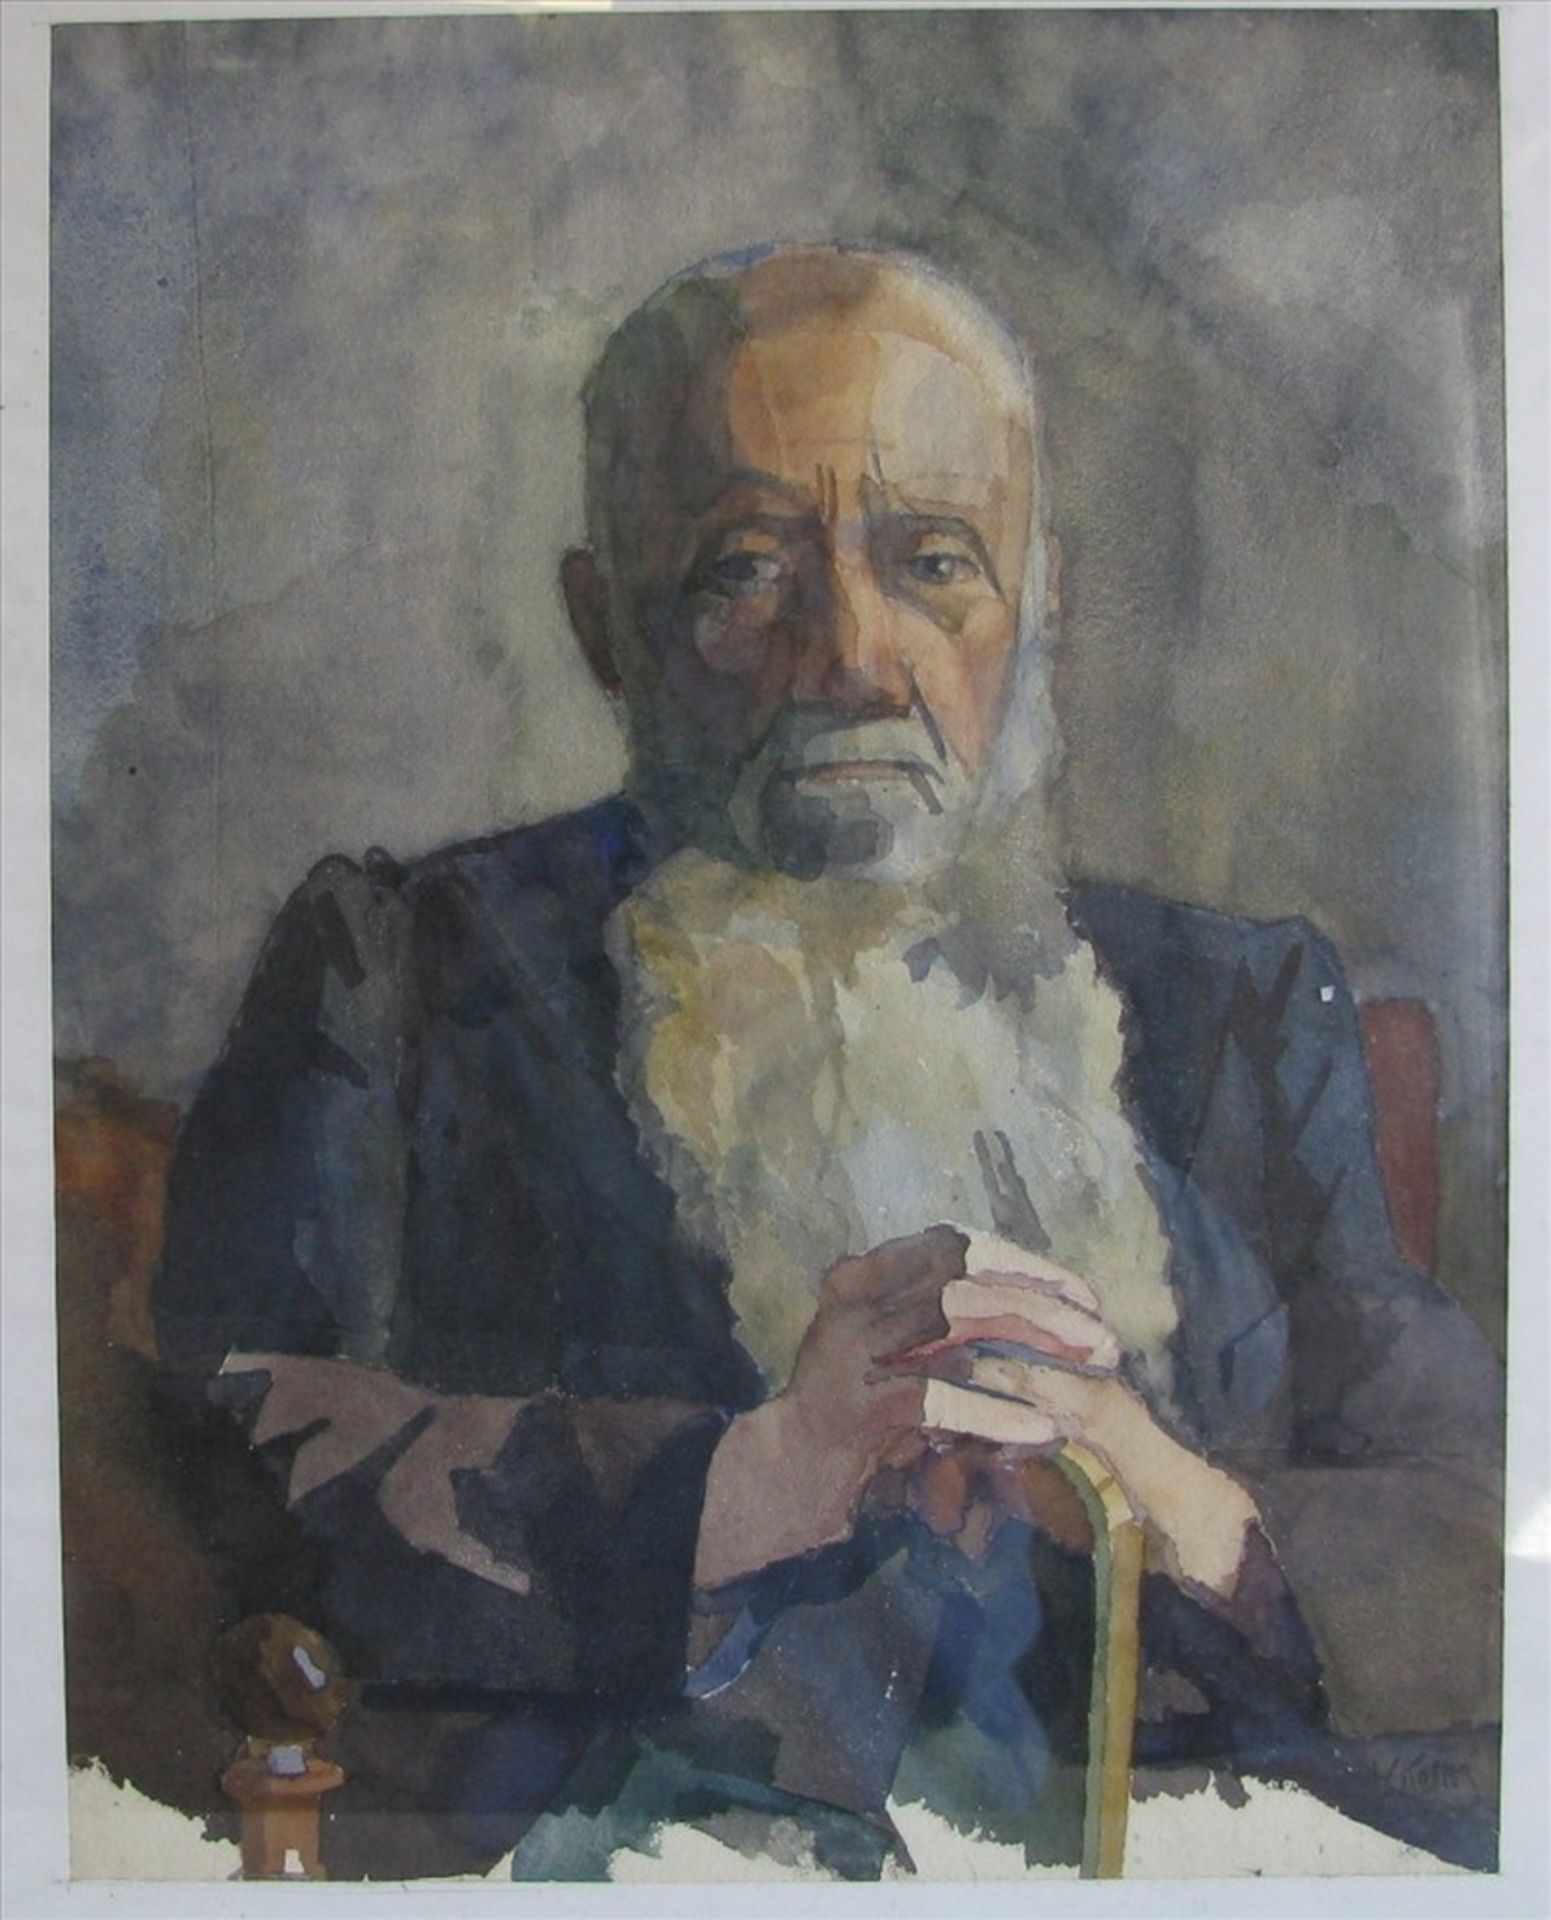 Koster, Vok, 1910 - 1996, "Porträt des Herrn Eekhof", re.u.sign., Aquarell, 47 x 37 cm, R.- - -19.00